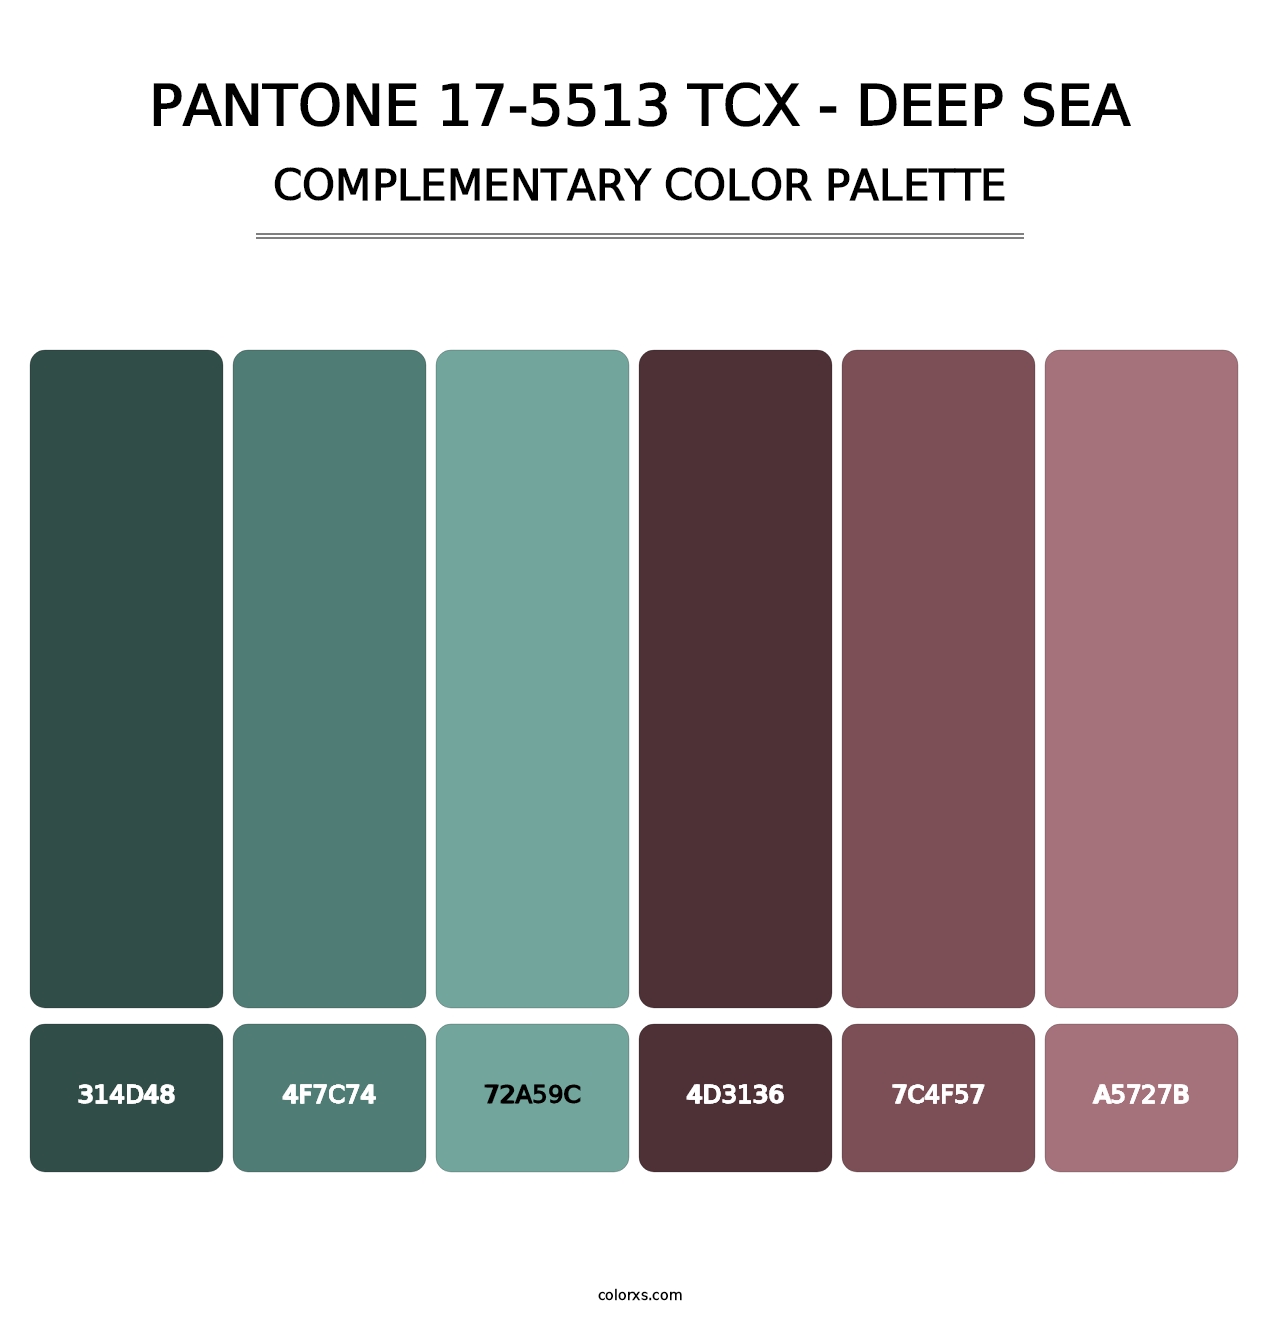 PANTONE 17-5513 TCX - Deep Sea - Complementary Color Palette